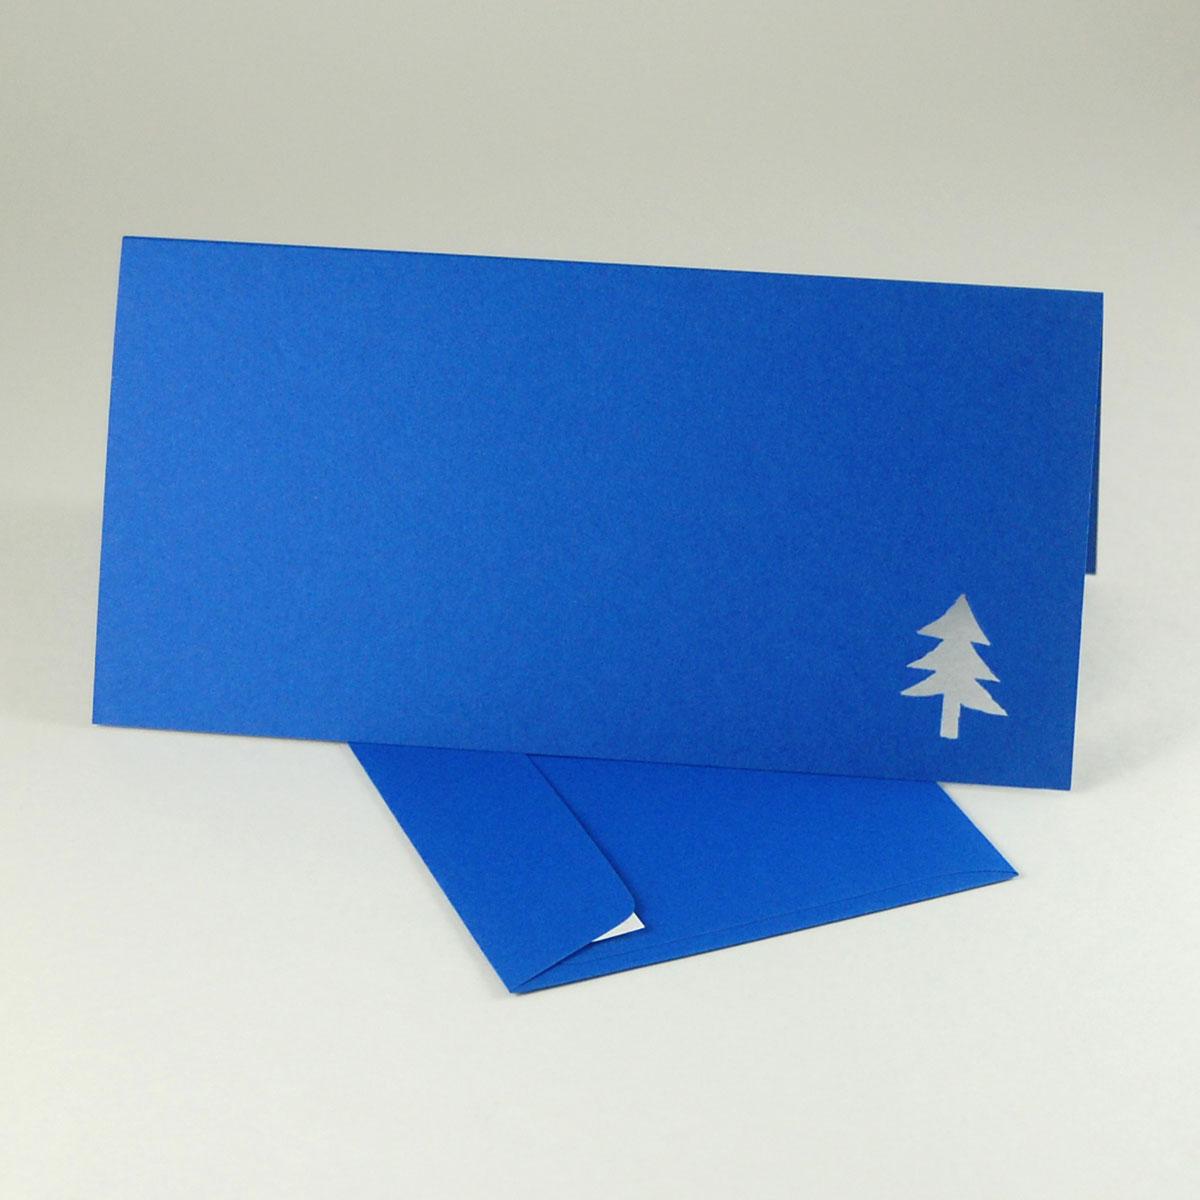 10 gestanzte Weihnachtskarten mit blauen Kuverts